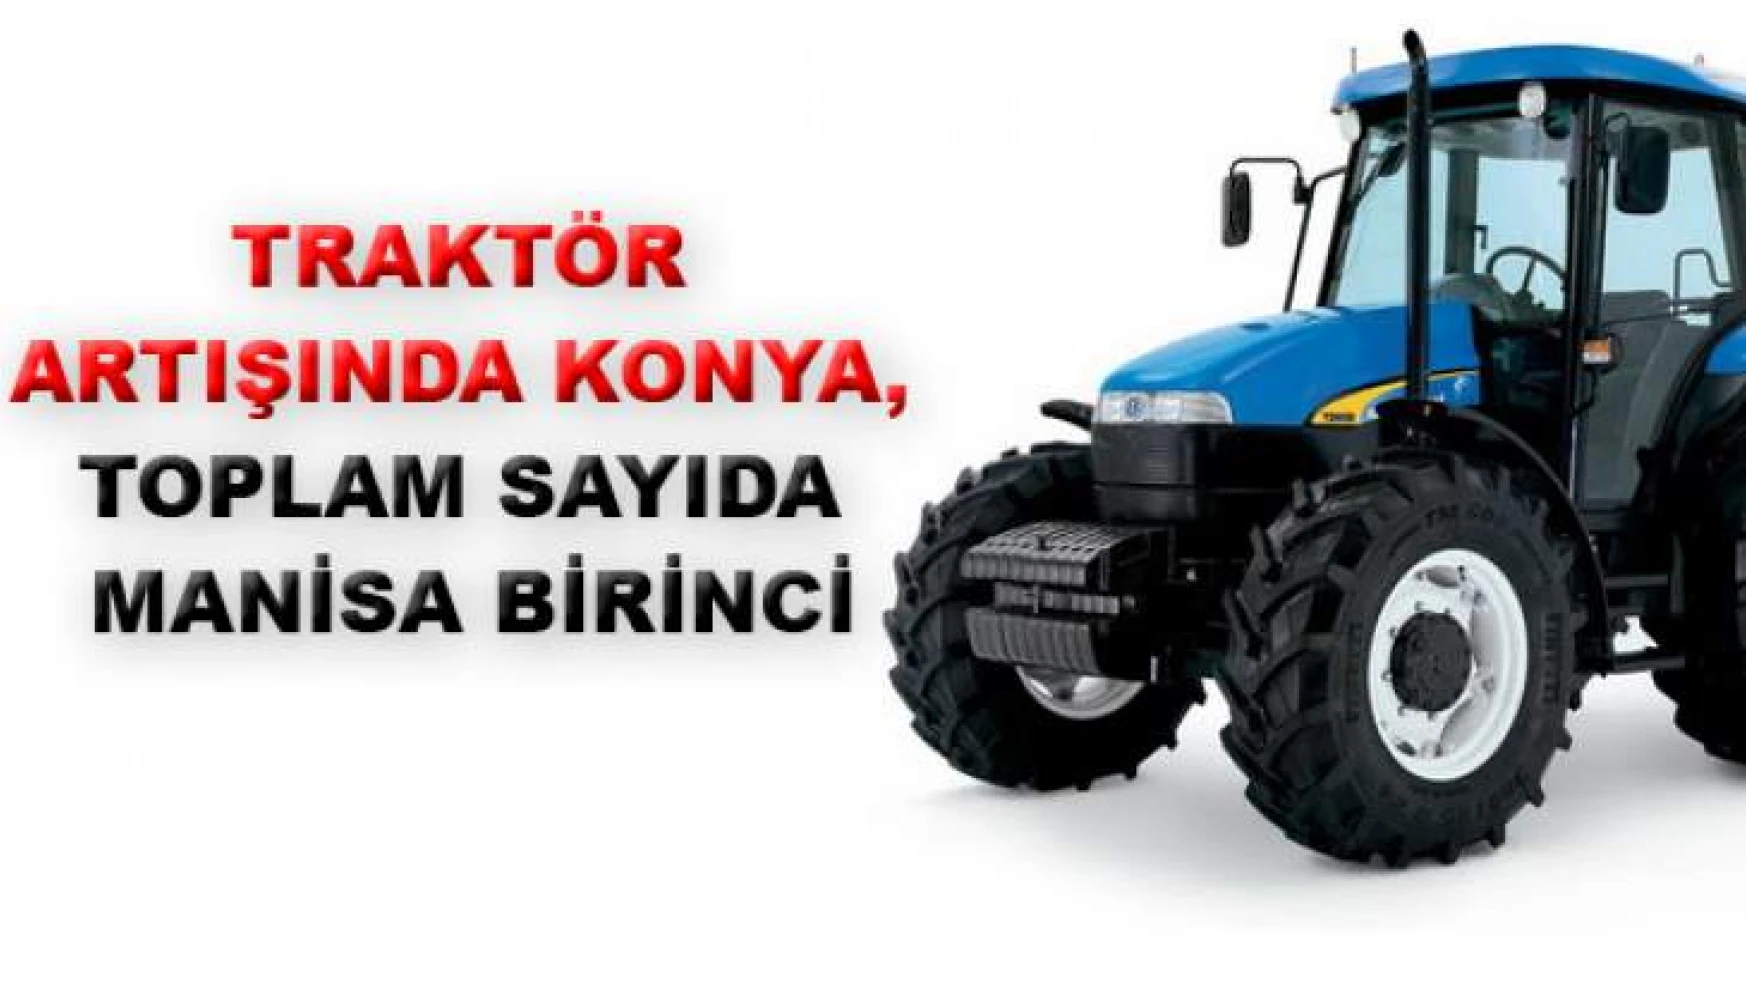 Traktörde ilk üç Manisa, Konya, İzmir